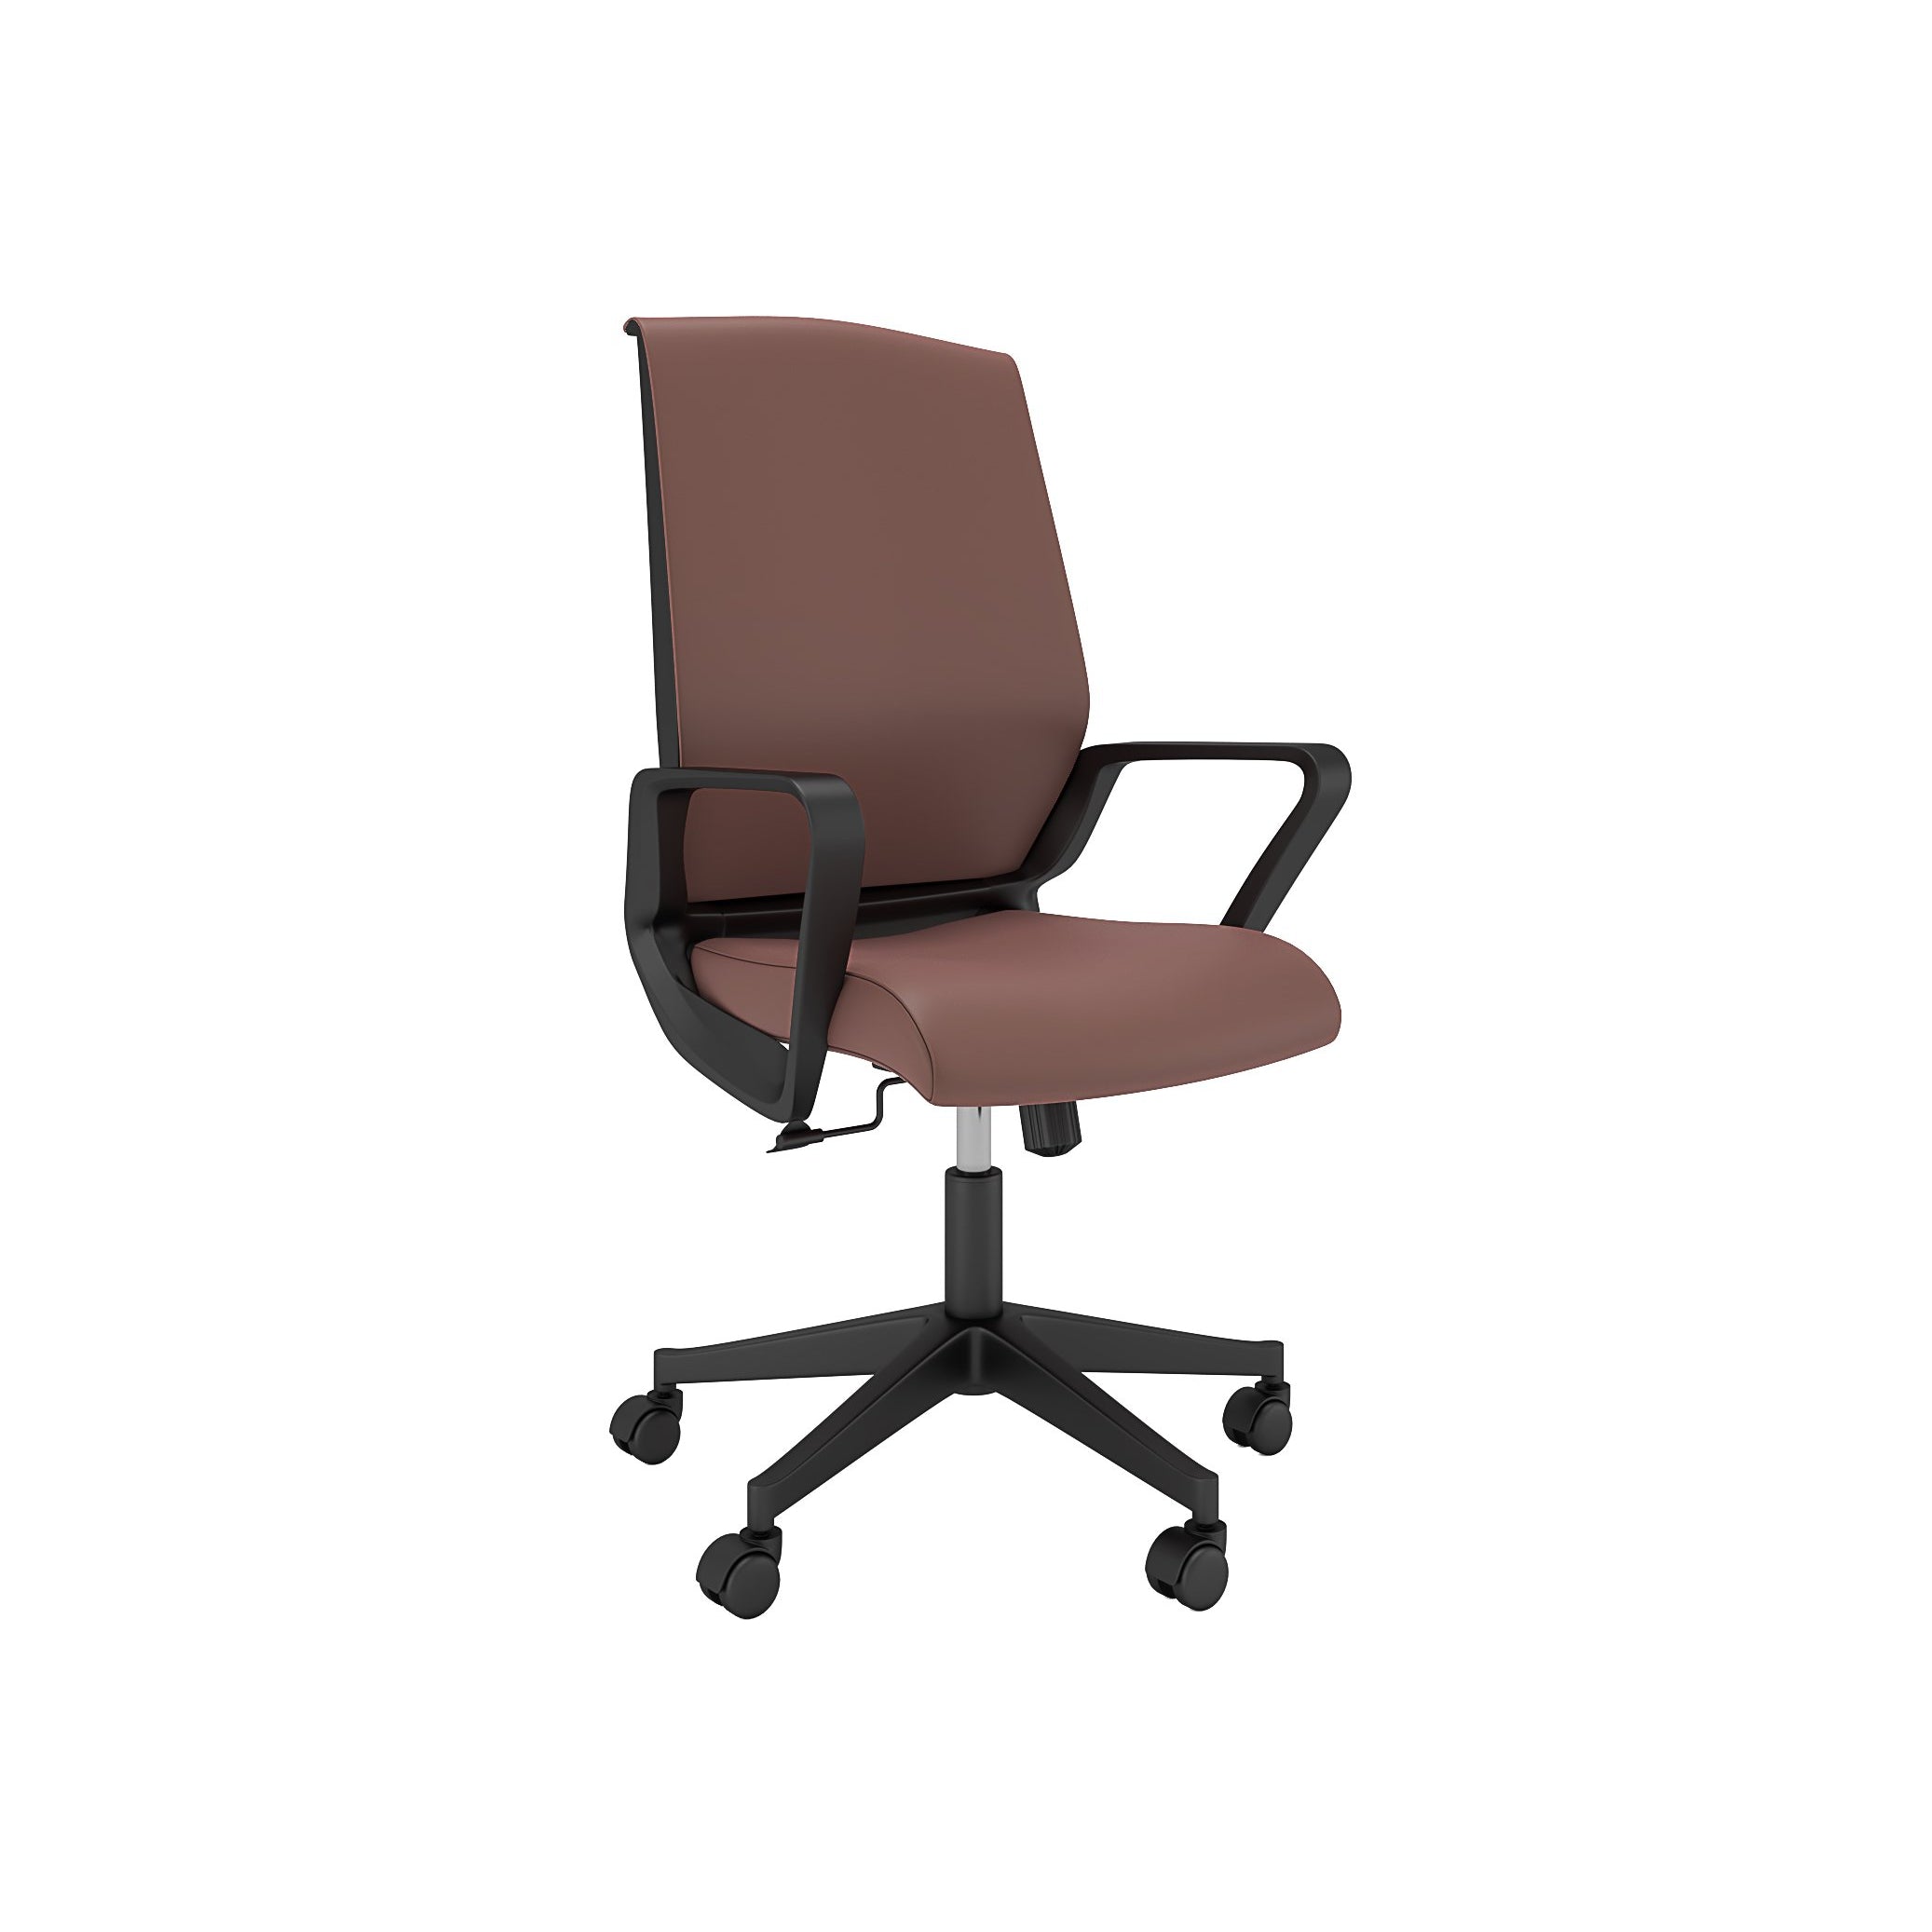 Chaise de bureau Nancy's Wethersfield - Chaise pivotante - Dossier inclinable - Ergonomique - Appui-tête - Simili cuir - Marron - Noir - 65 x 63 x 98-110 cm